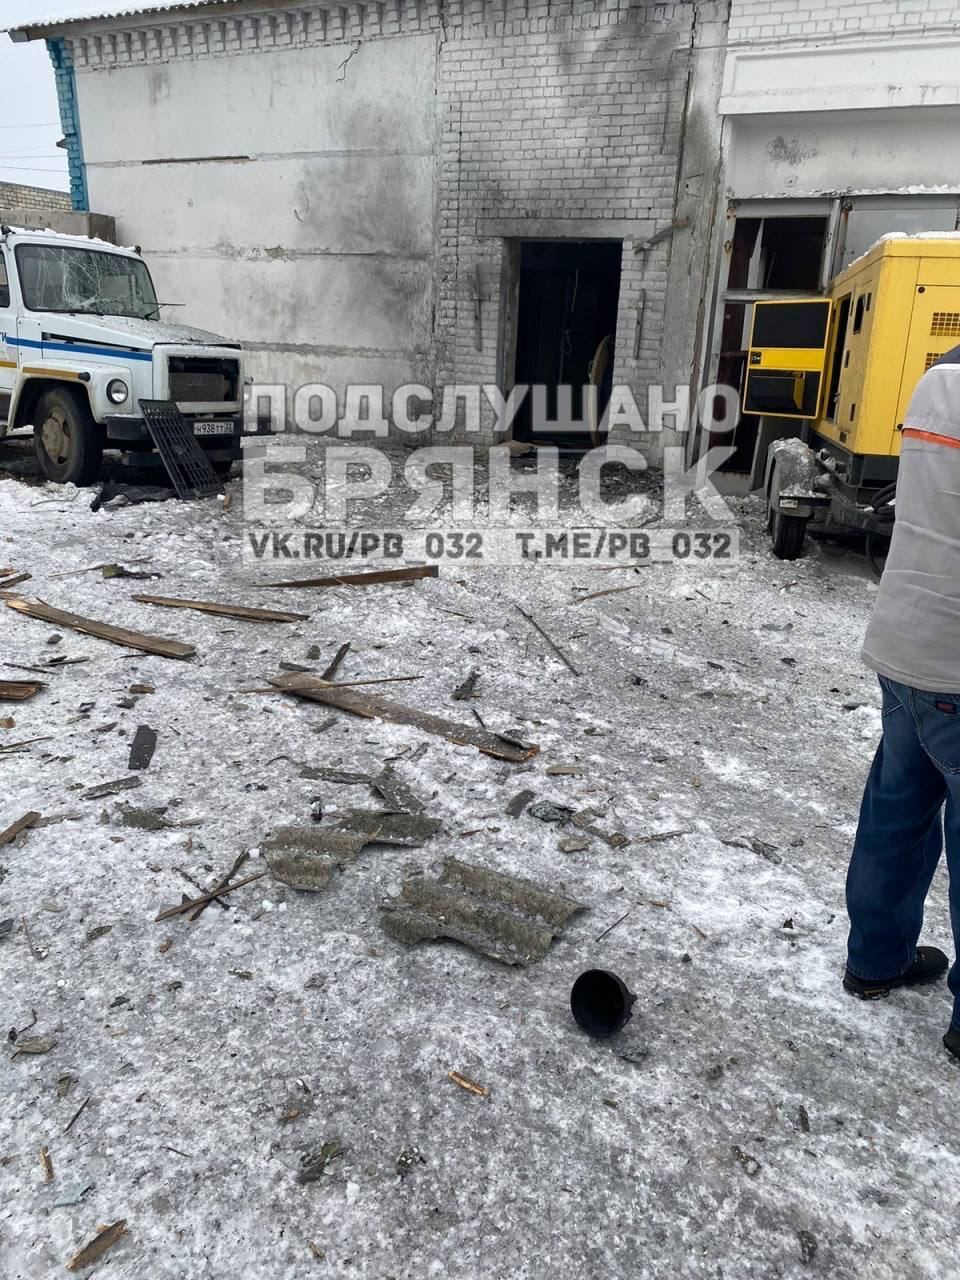 Ни дня без "бавовны": в Трубчевске Брянской области БПЛА атаковал здание РЭС, момент попал на видео